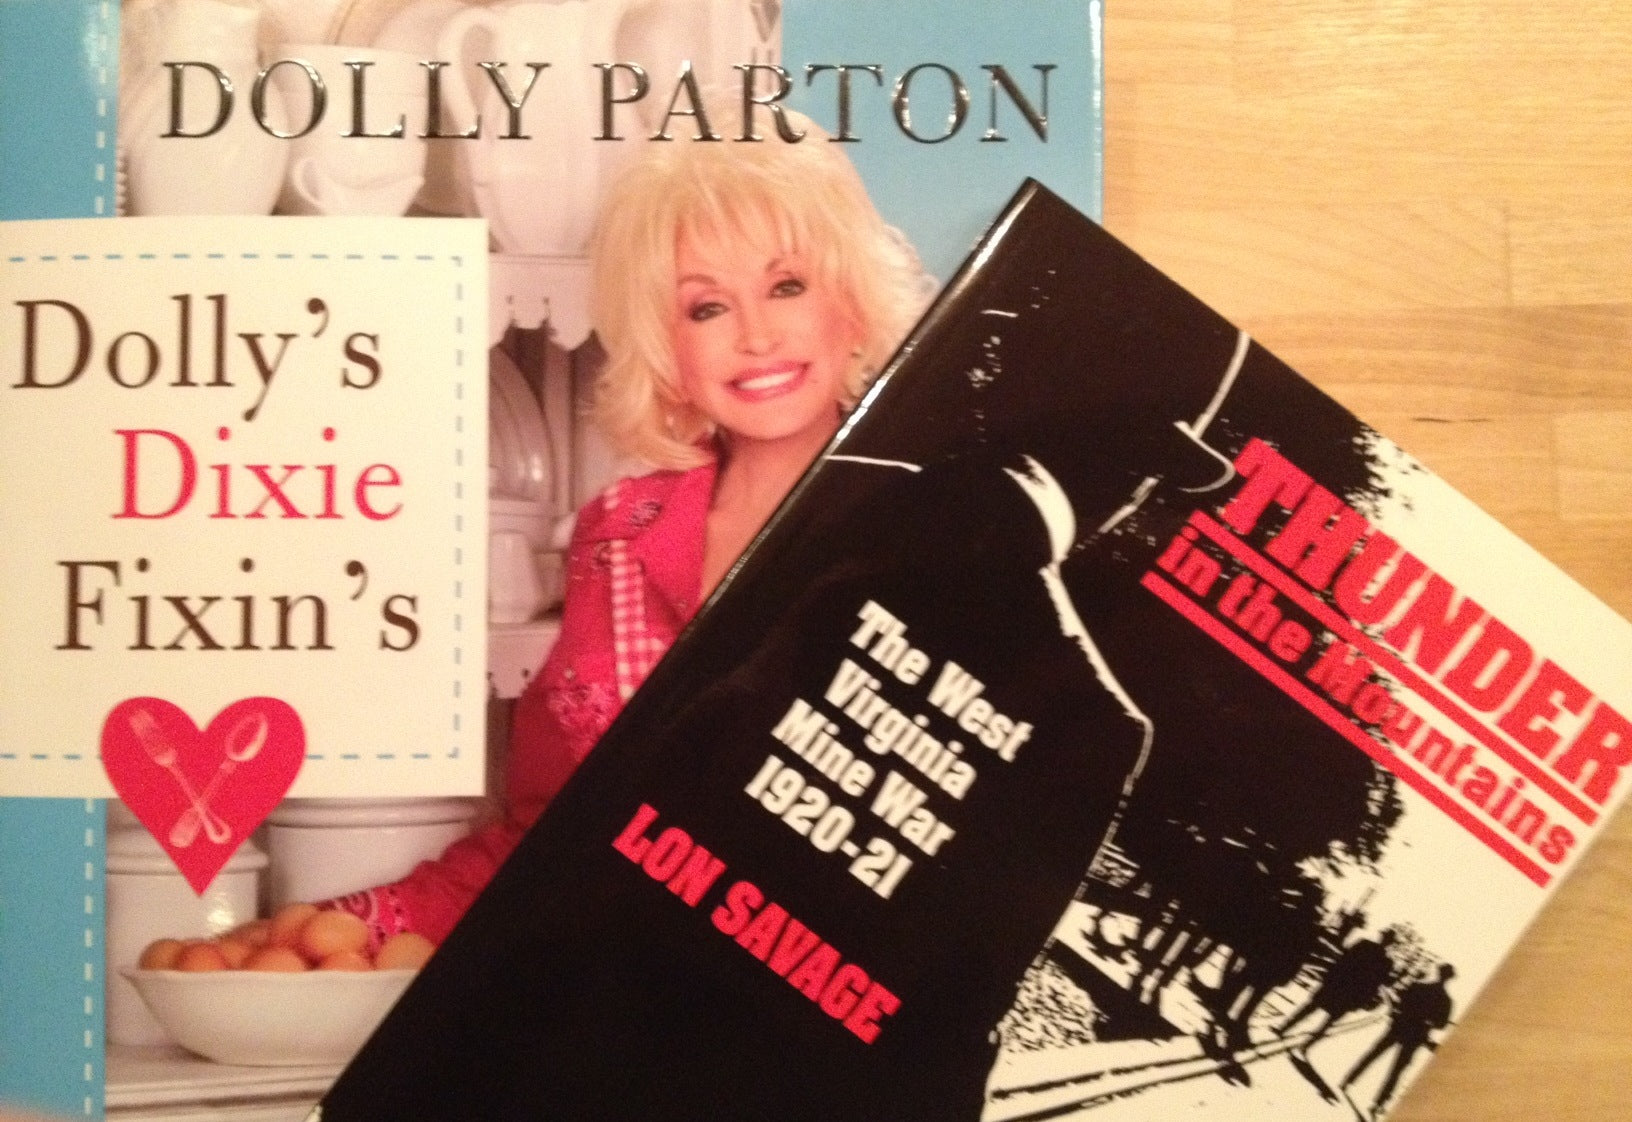 Under My Tree: Dolly's Recipes and Coal History